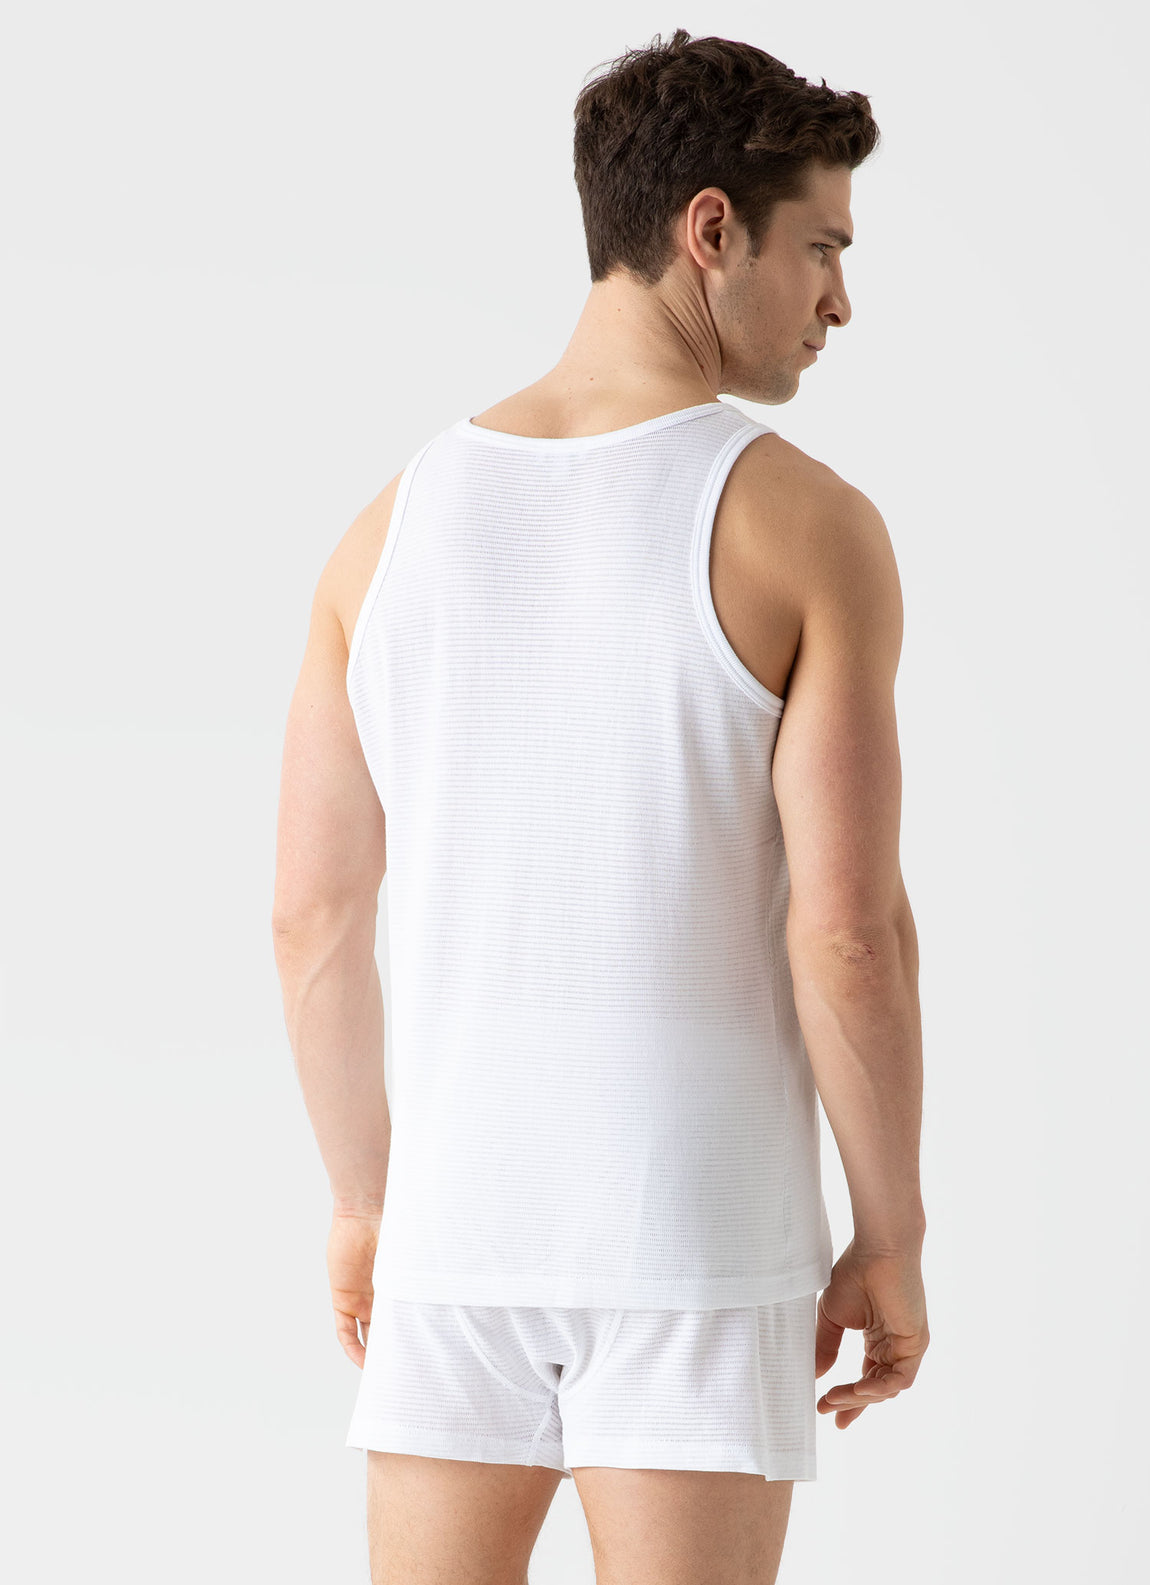 Men's Cellular Cotton Underwear Vest in White | Sunspel